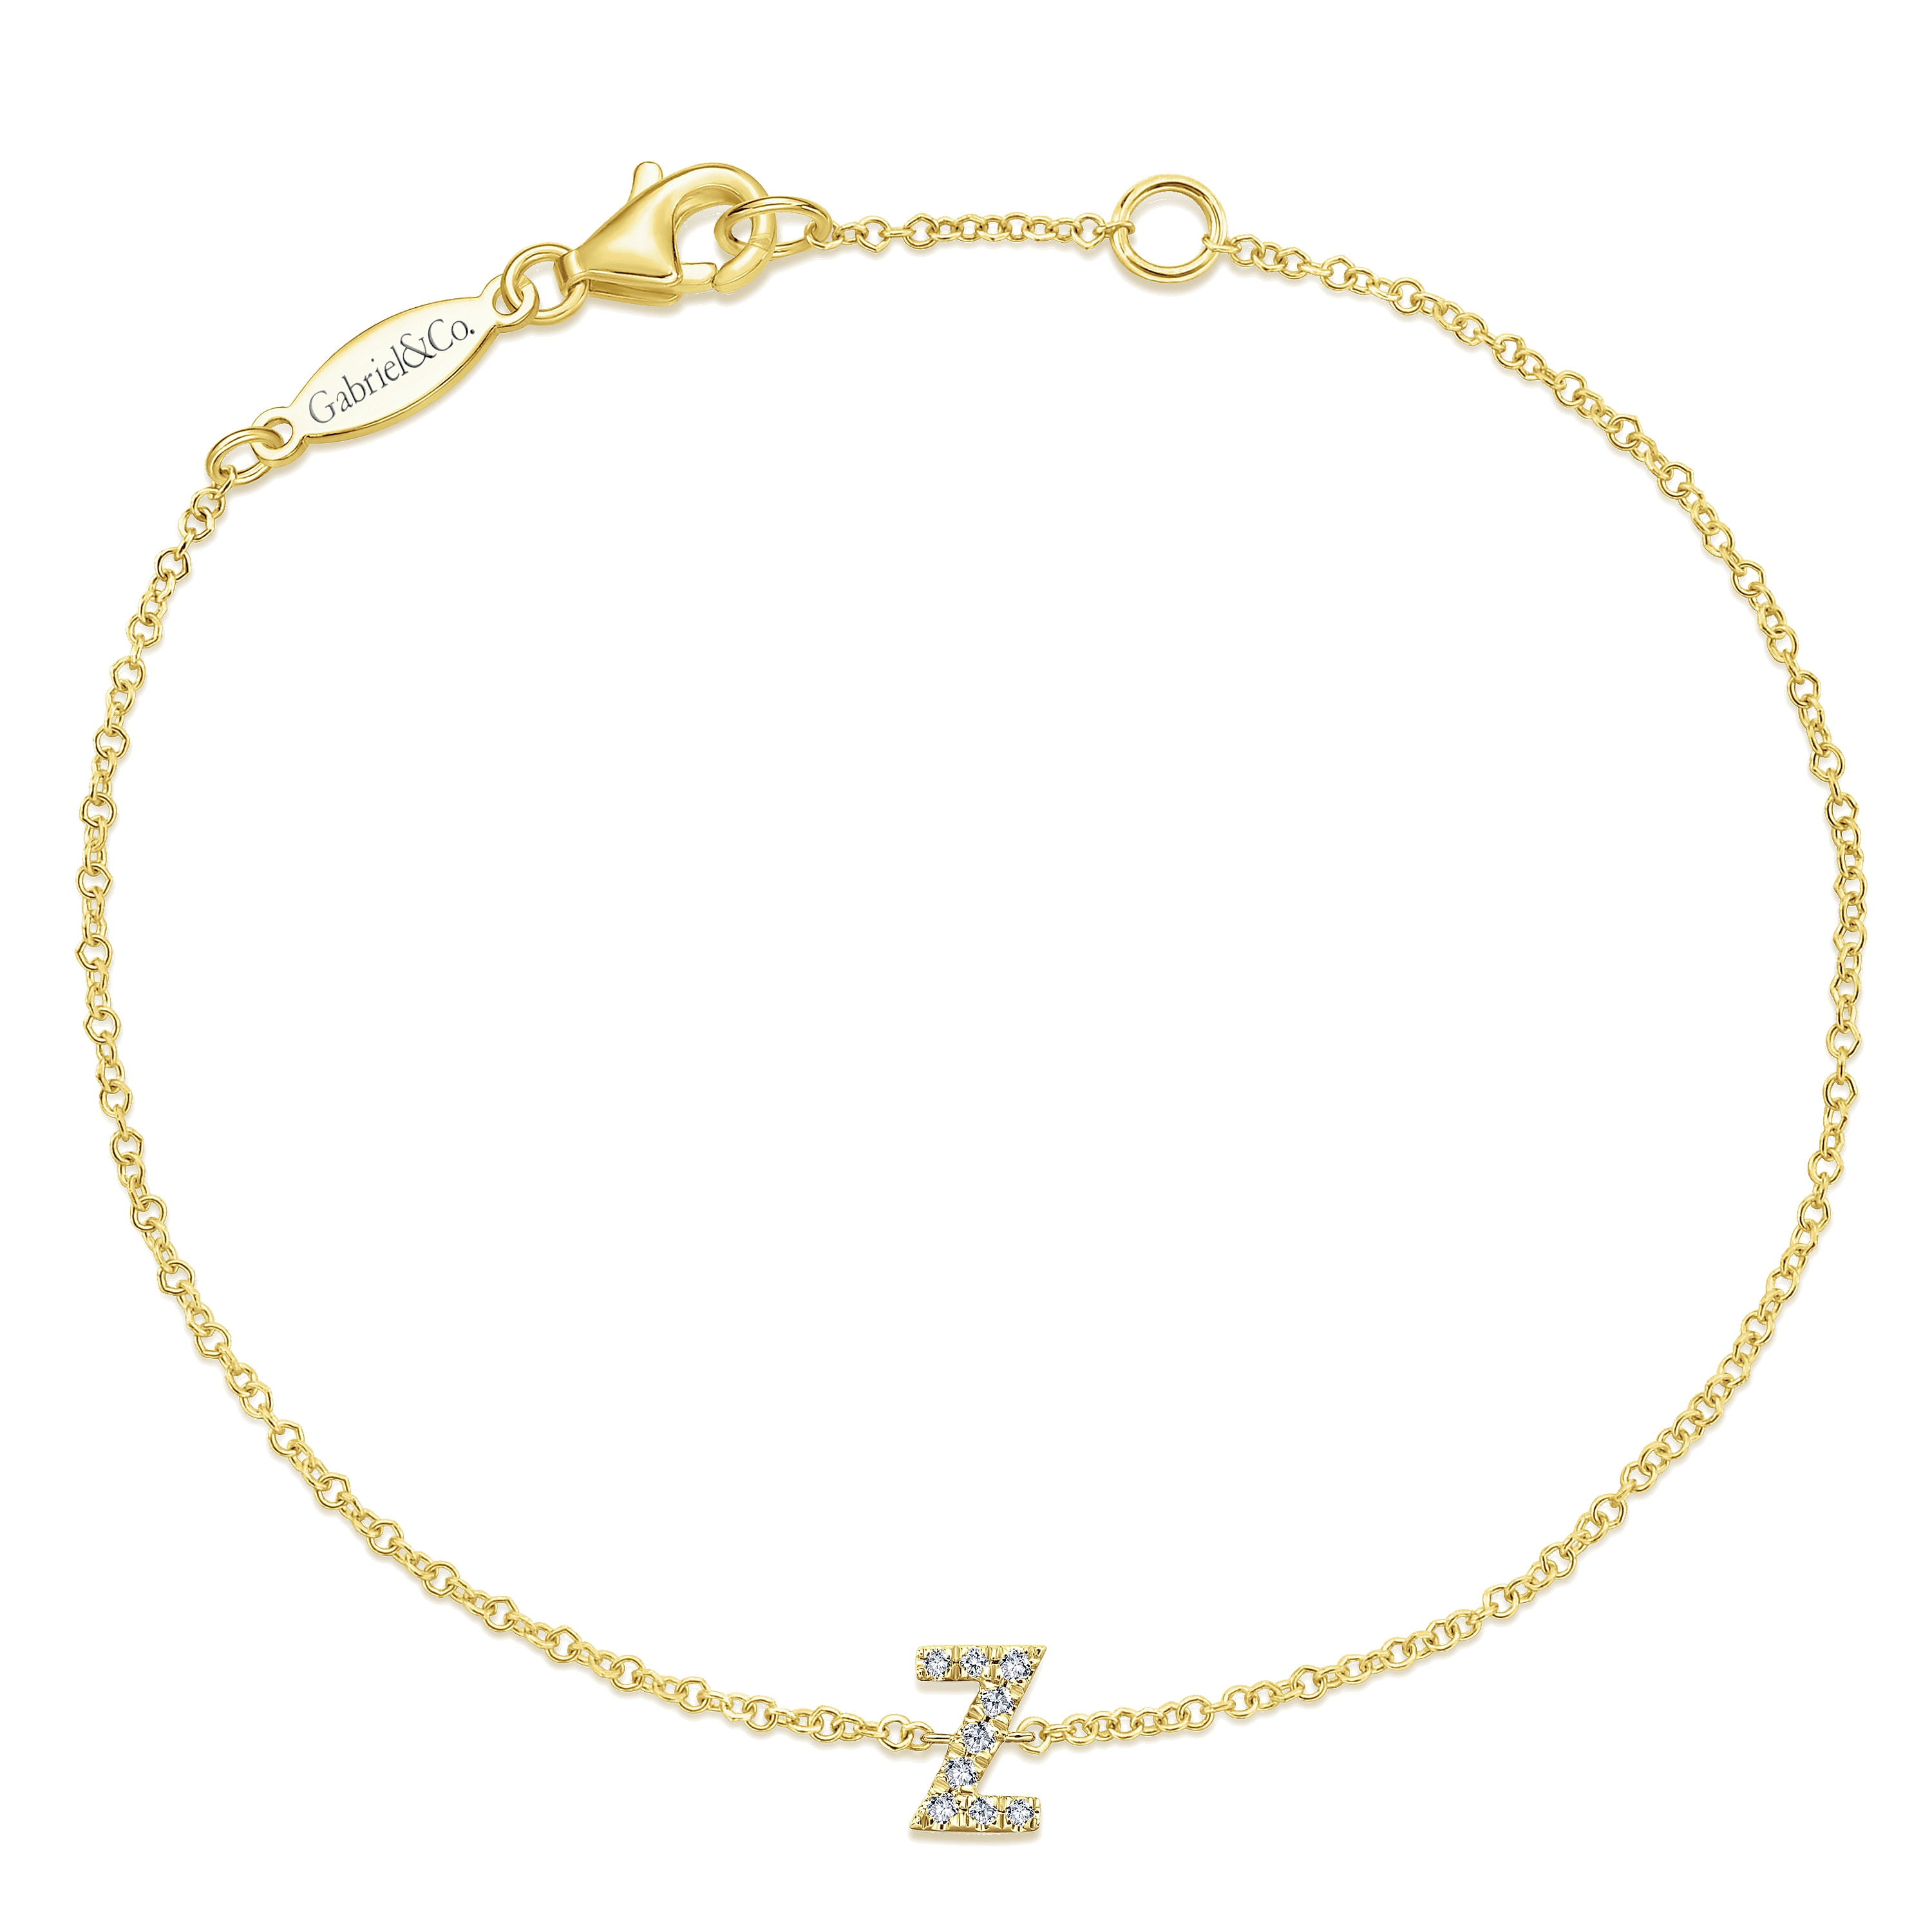 14K Yellow Gold Chain Bracelet with Z Diamond Initial